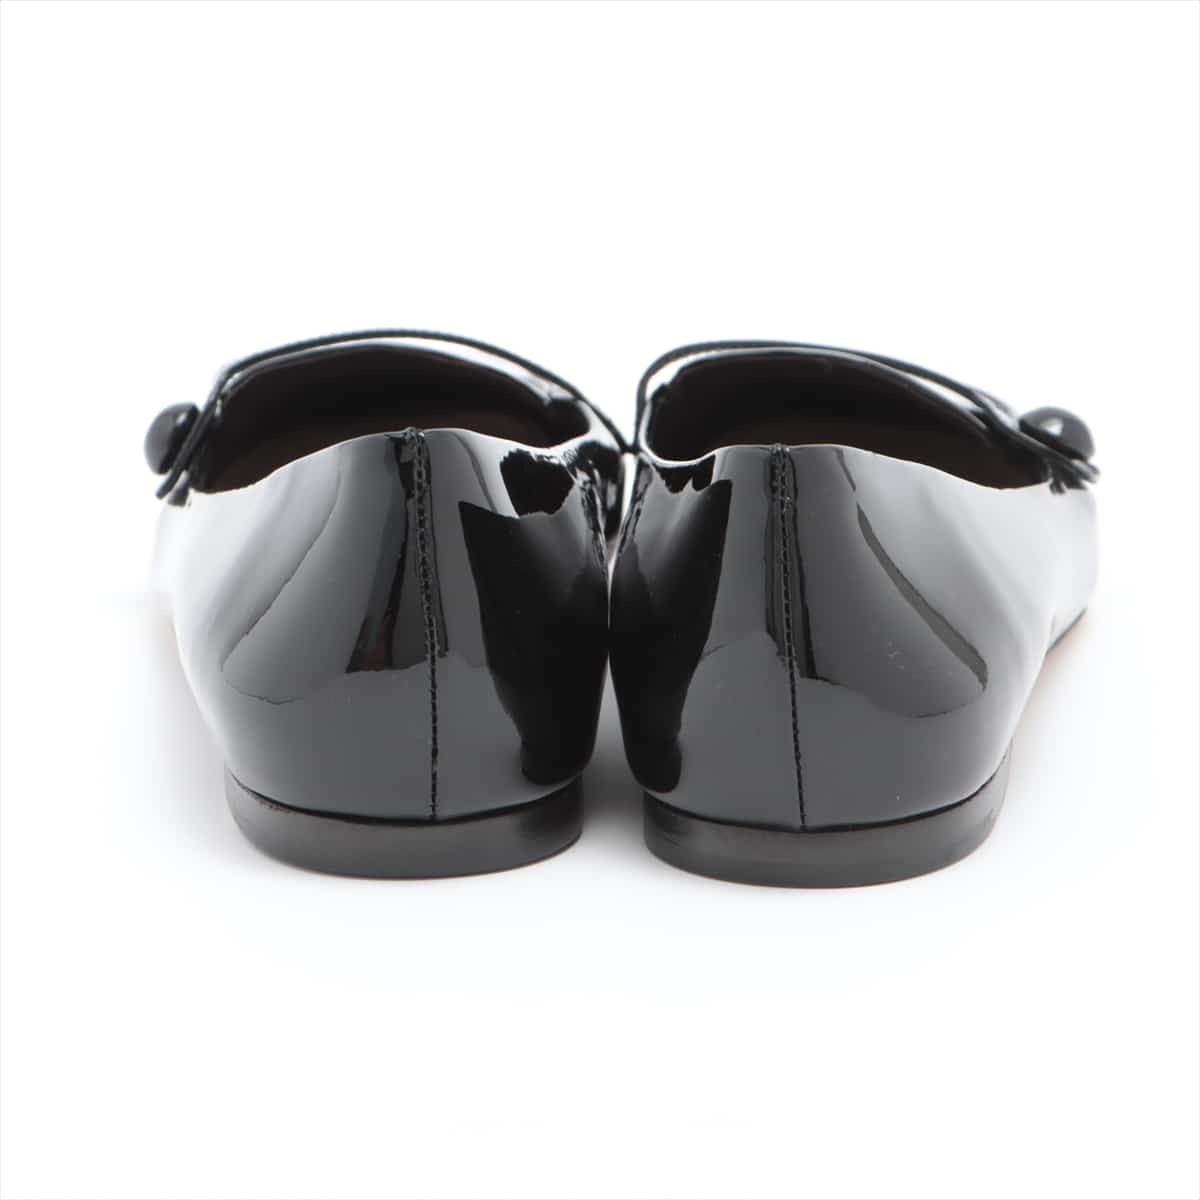 Miu Miu Patent leather Flat Pumps 38 Ladies' Black